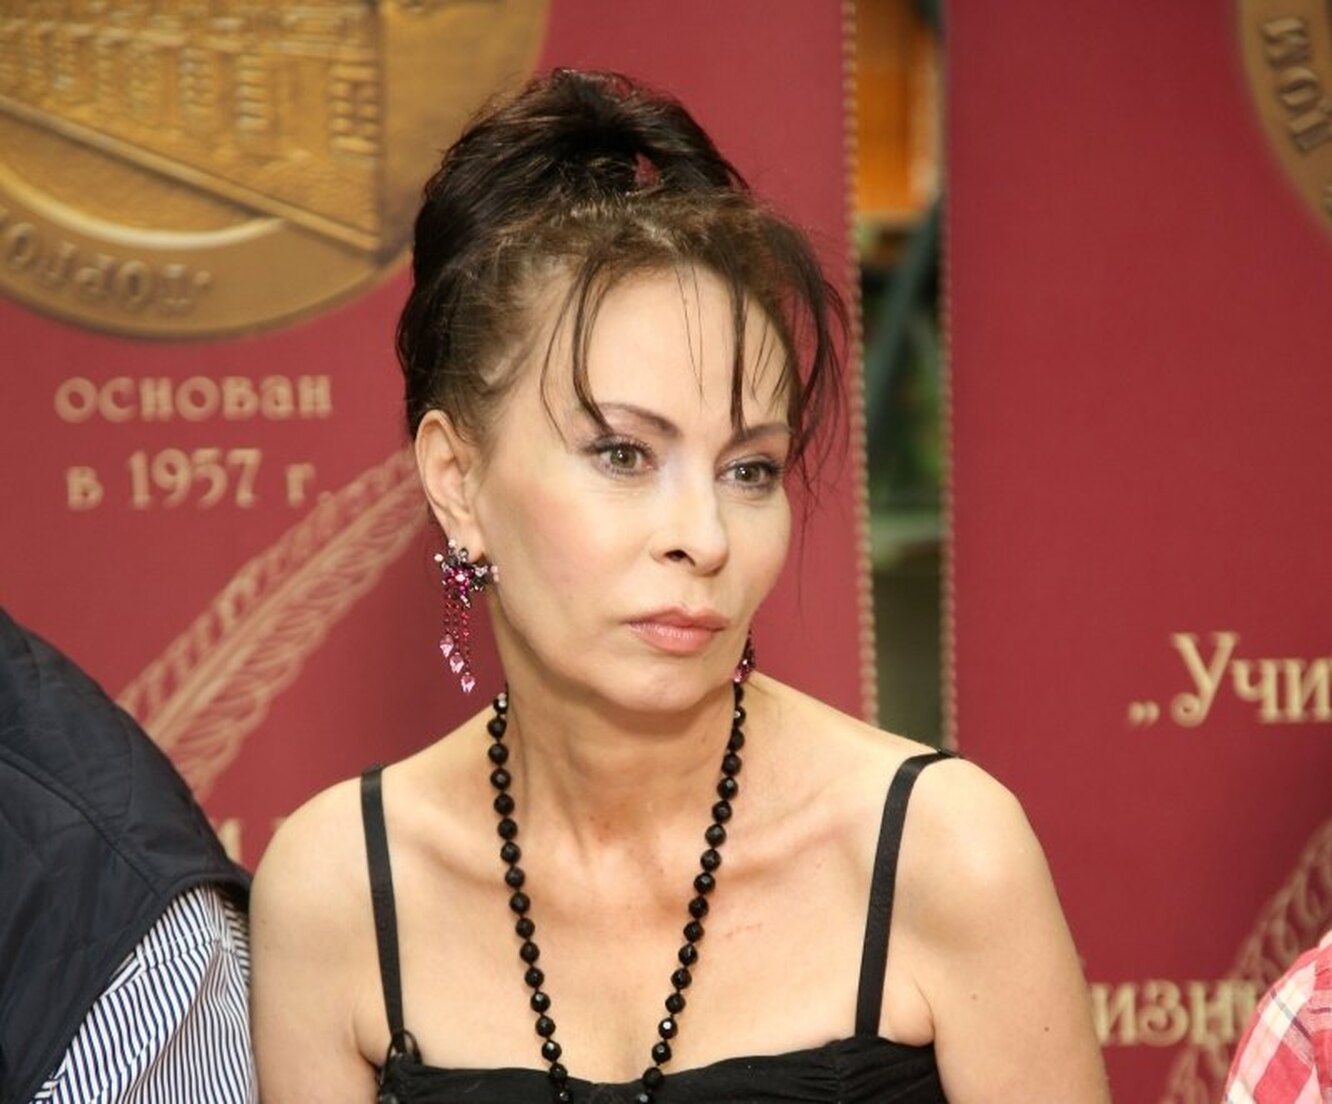 Генеральный директор газеты «Известия» заявил, что его журналист Марине Хлебниковой привиделся